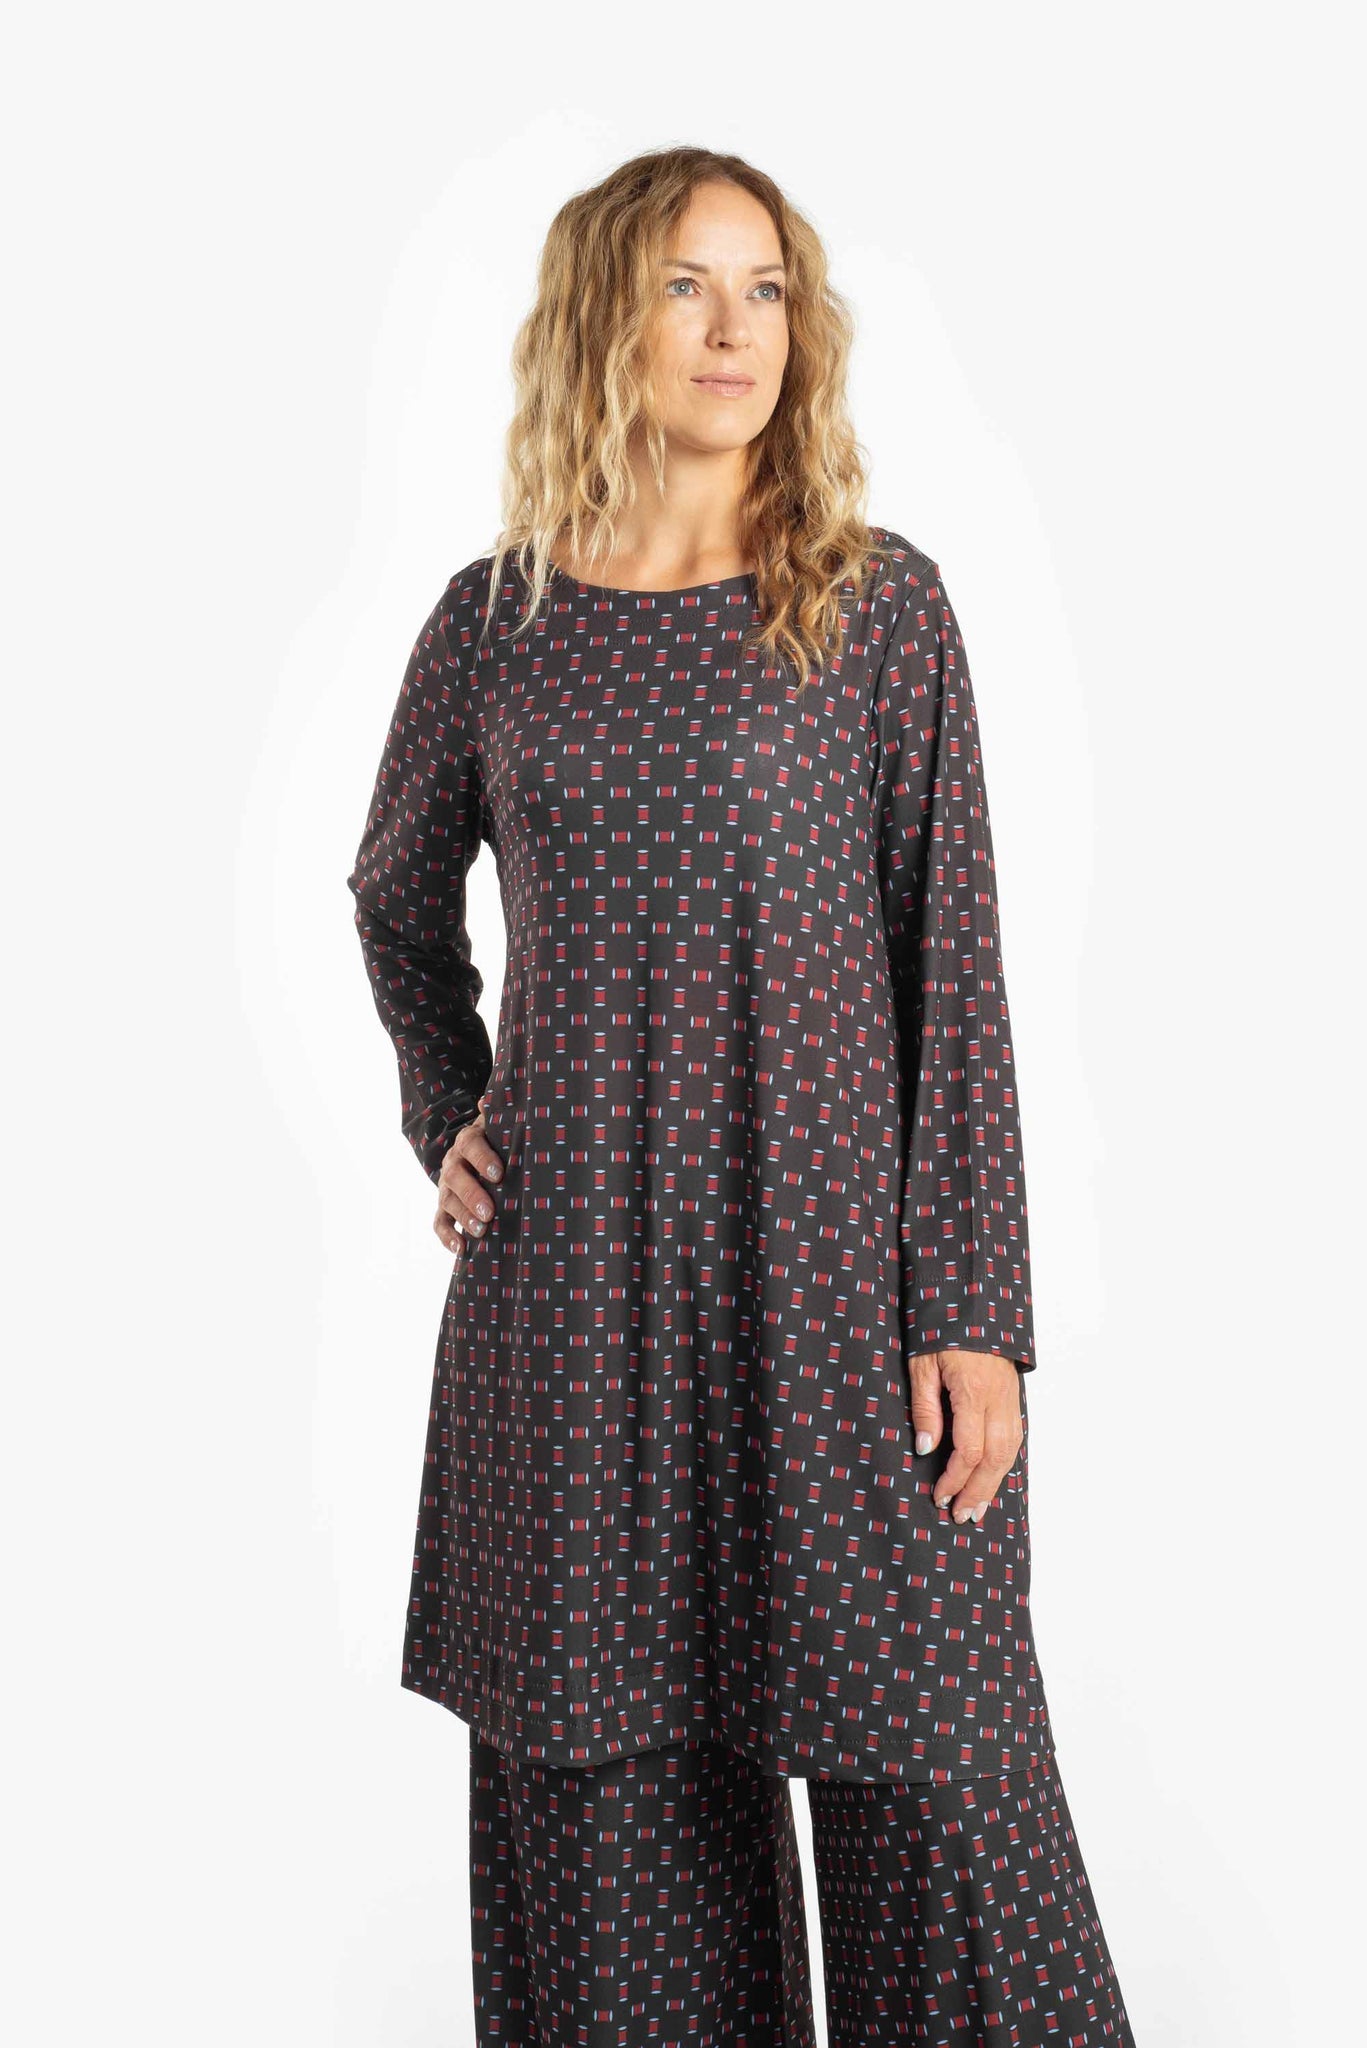 Short patterned dress